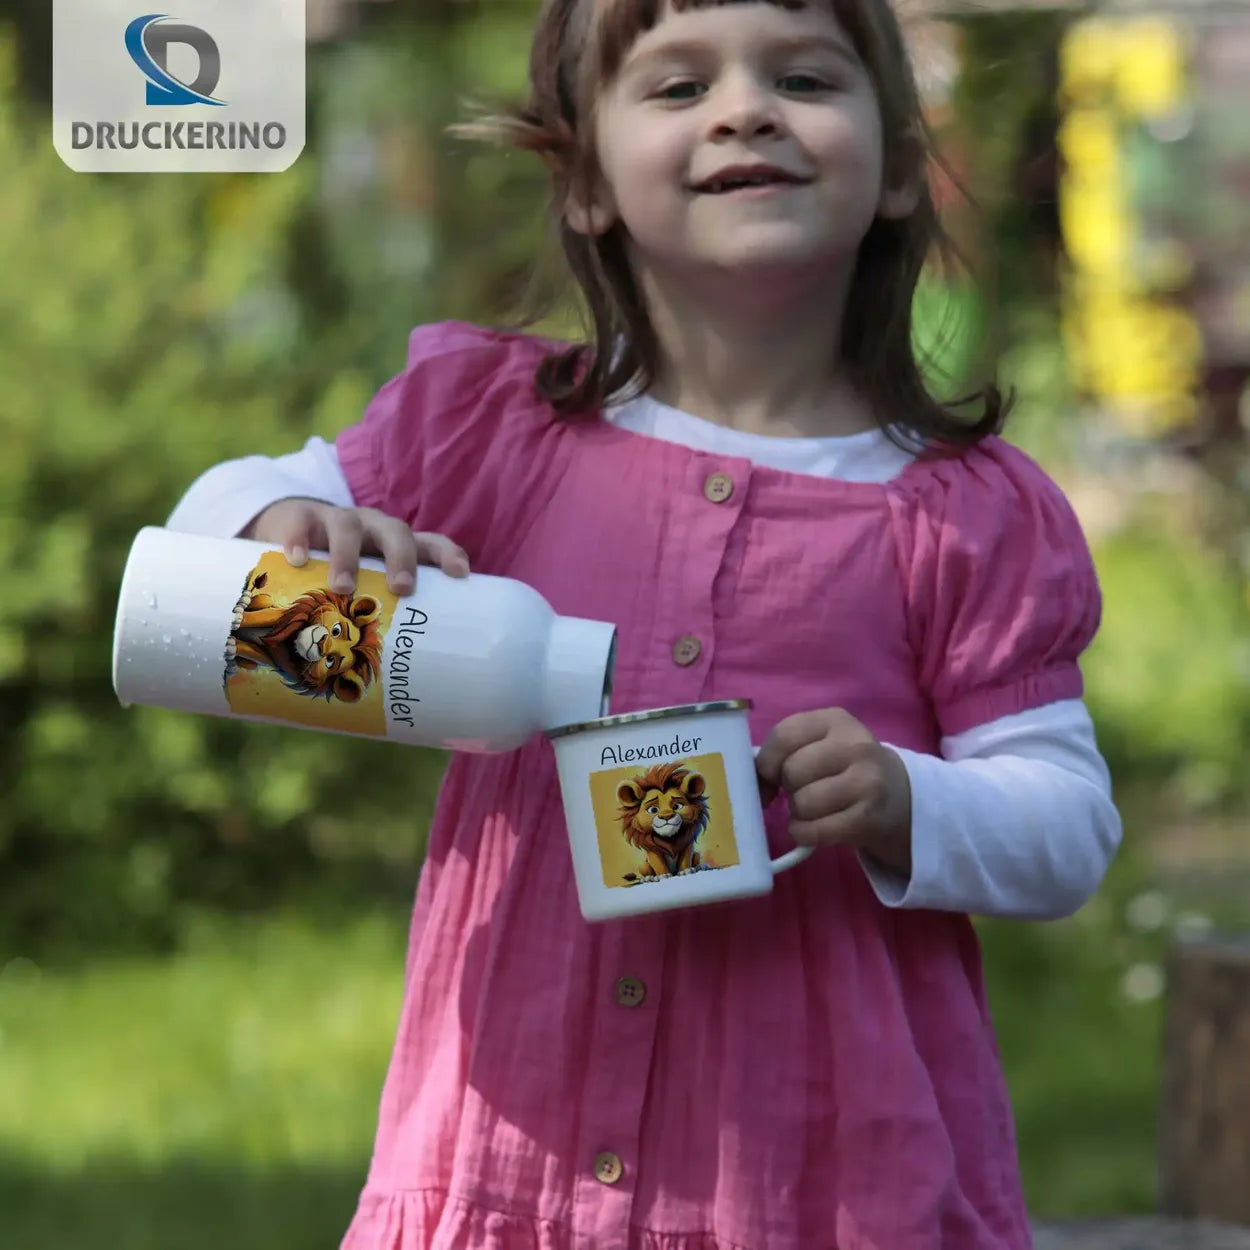 Löwenfreund Emaille Tasse für Kinder personalisiert Emailletasse Druckerino   